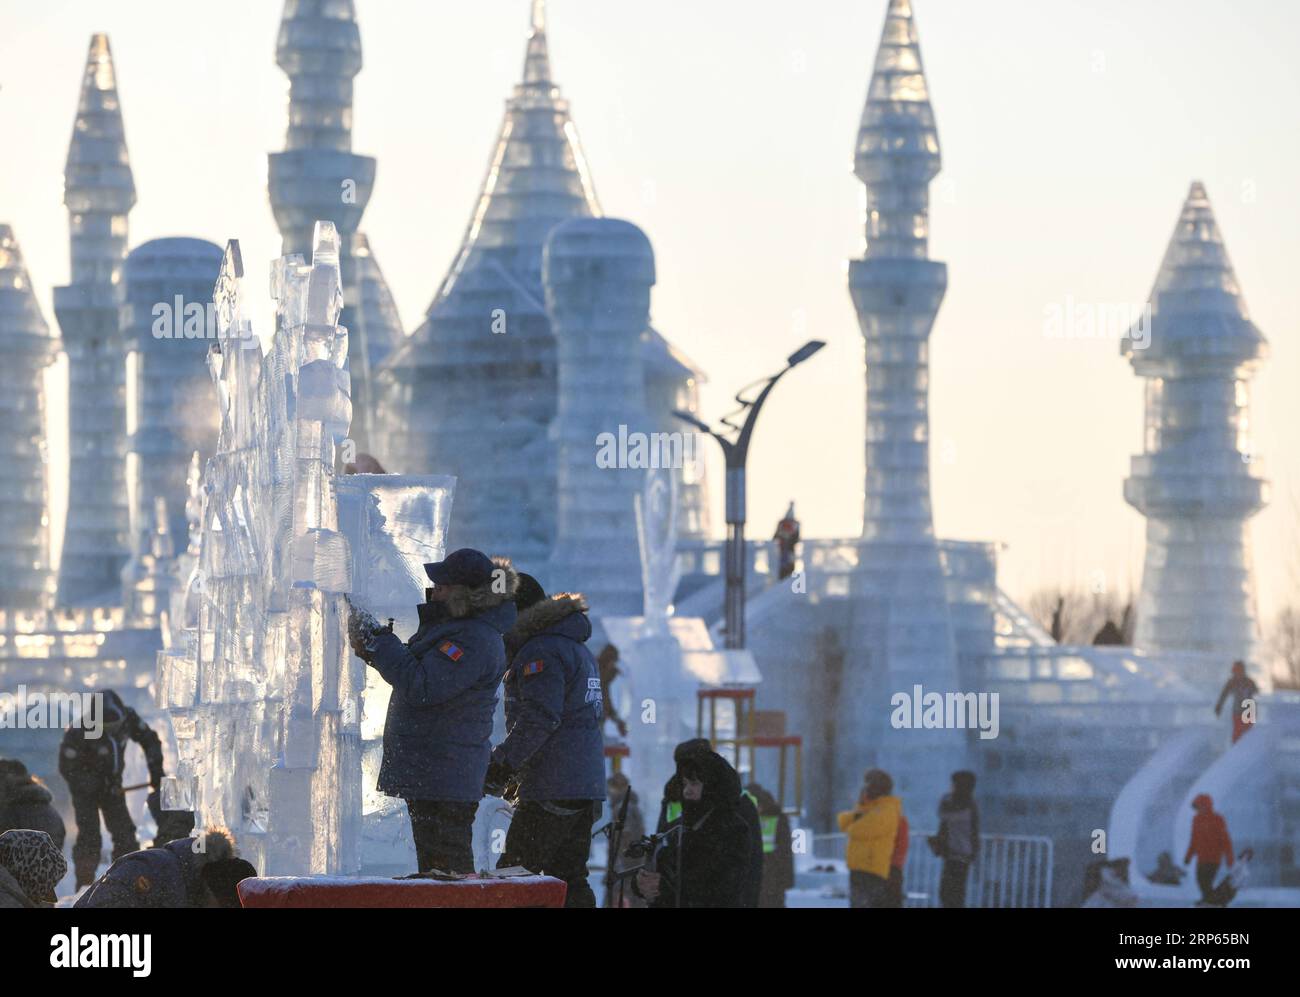 (190102) -- HARBIN, 2 gennaio 2019 (Xinhua) -- i concorrenti lavorano sulle sculture di ghiaccio durante un concorso internazionale di scultura su ghiaccio a Harbin, capitale della provincia di Heilongjiang della Cina nord-orientale, 2 gennaio 2019. Alla competizione hanno partecipato in totale 16 squadre provenienti da 12 paesi e regioni. (Xinhua/Wang Song) CHINA-HARBIN-ICE SCULPTURE-COMPETITION (CN) PUBLICATIONxNOTxINxCHN Foto Stock